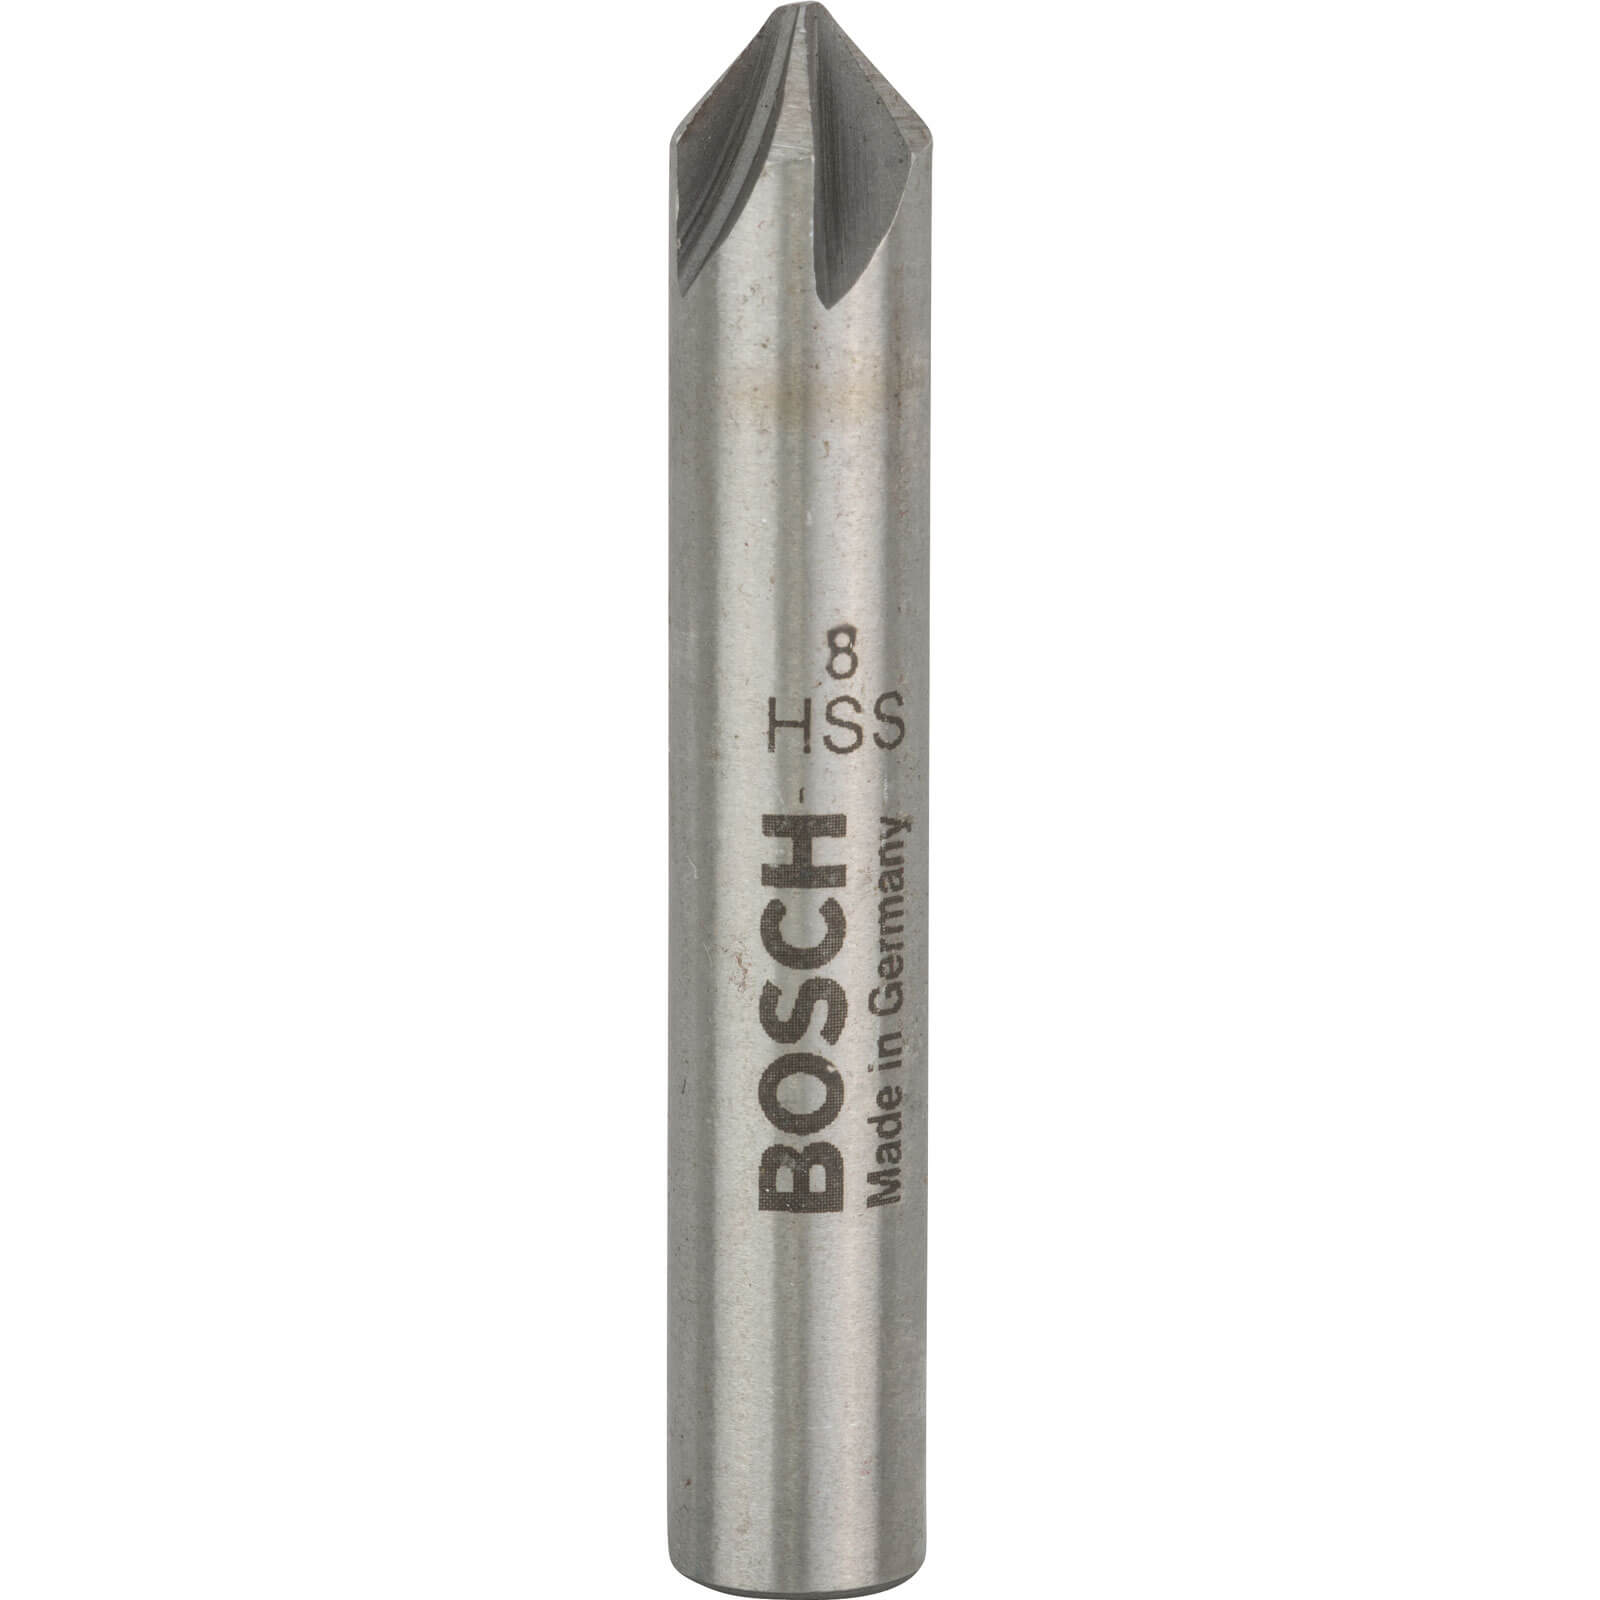 Photo of Bosch Hss Countersink Bit 8mm